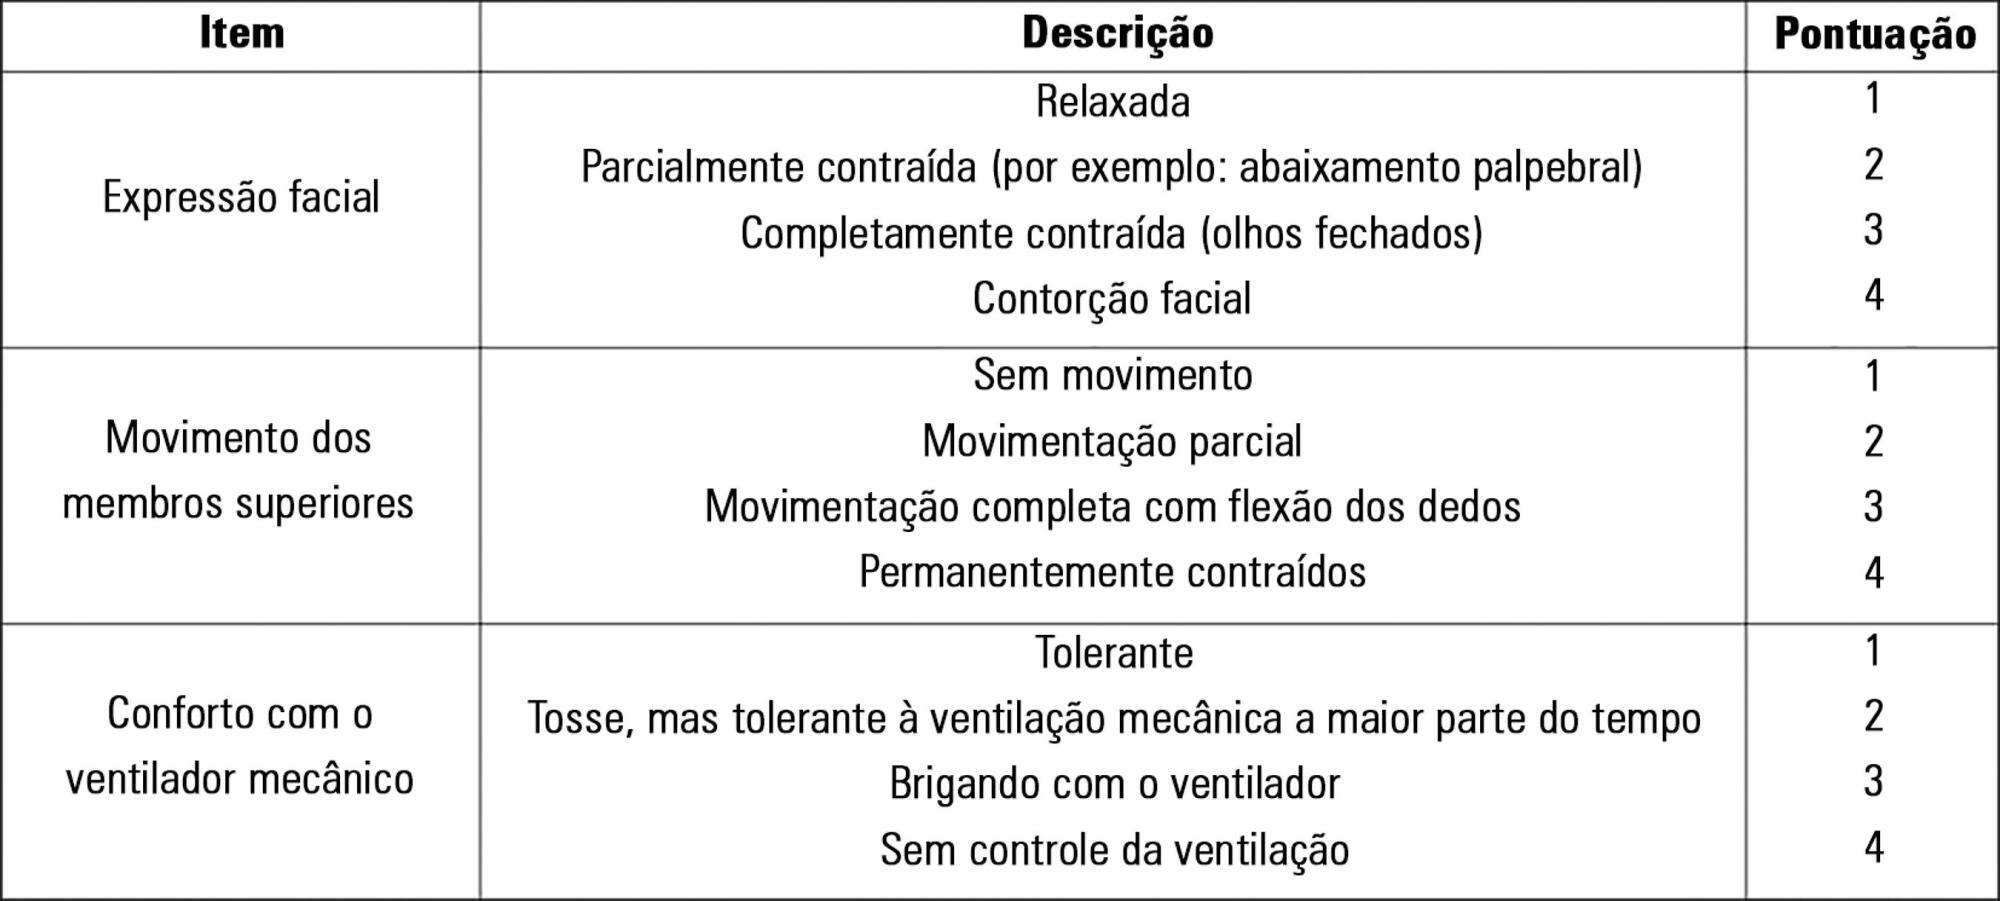 Avaliação da dor de vítimas de traumatismo craniencefálico pela versão brasileira da Behavioral Pain Scale